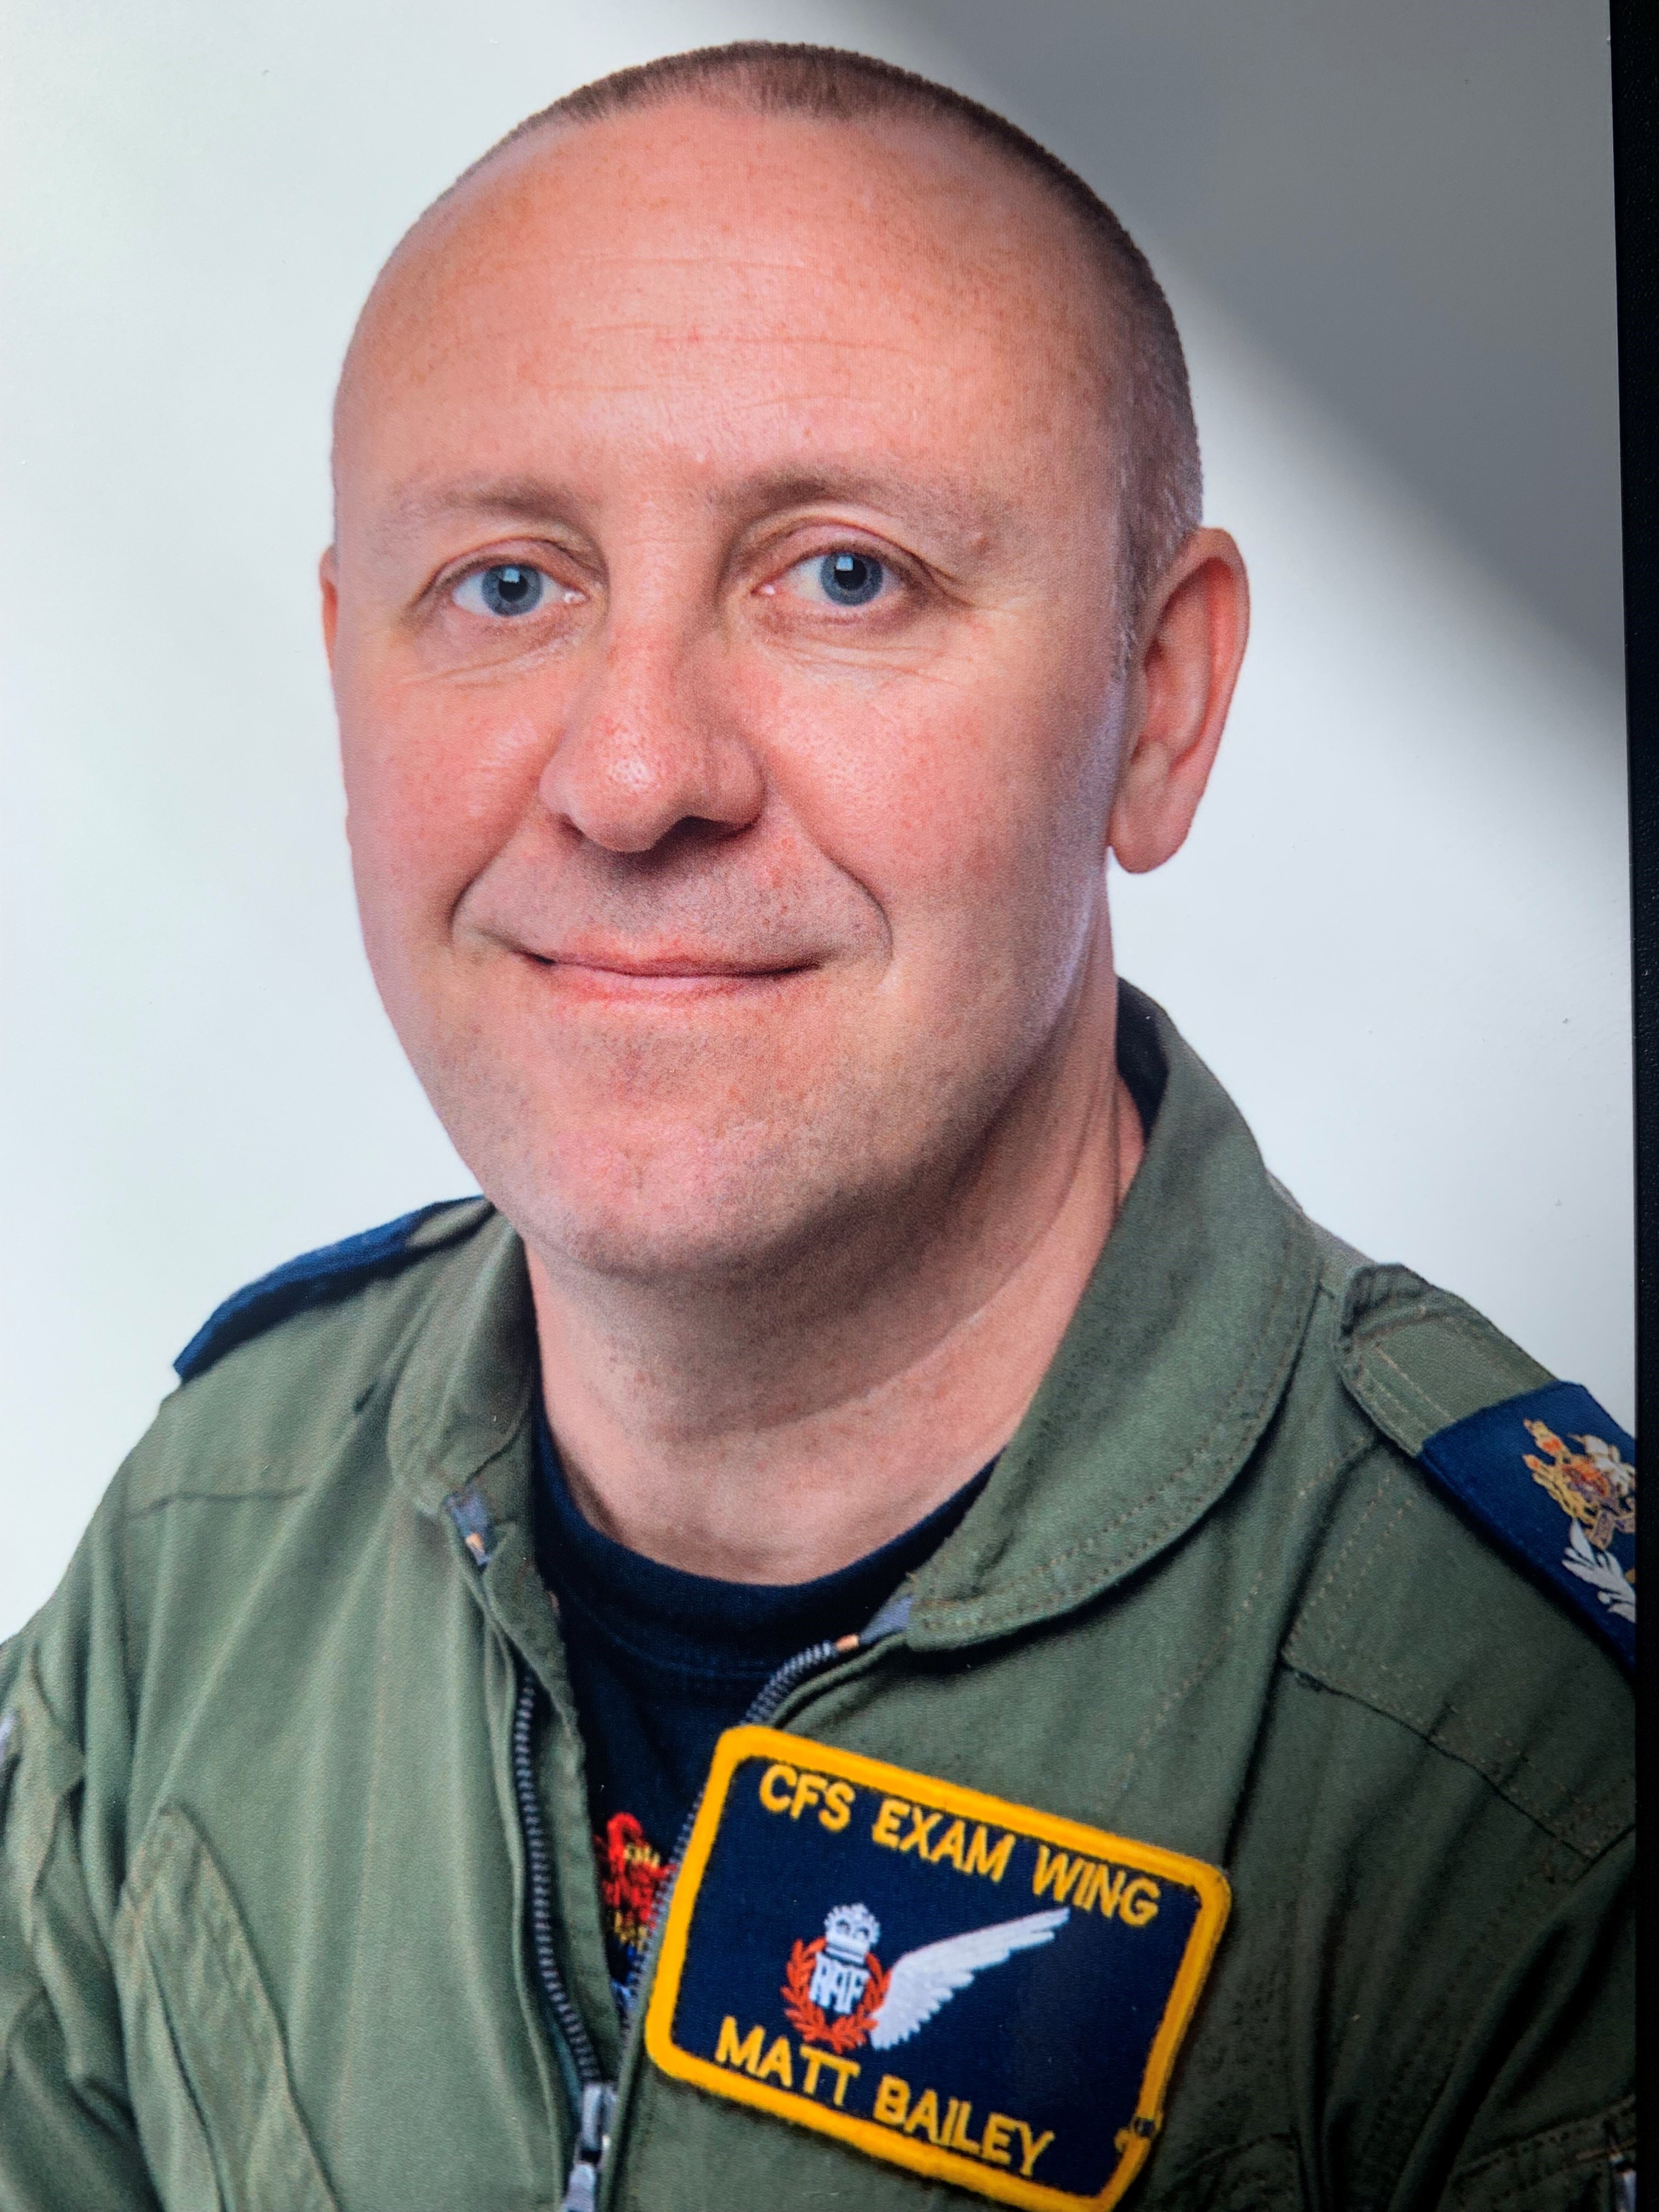 Image shows RAF aviator smiling.